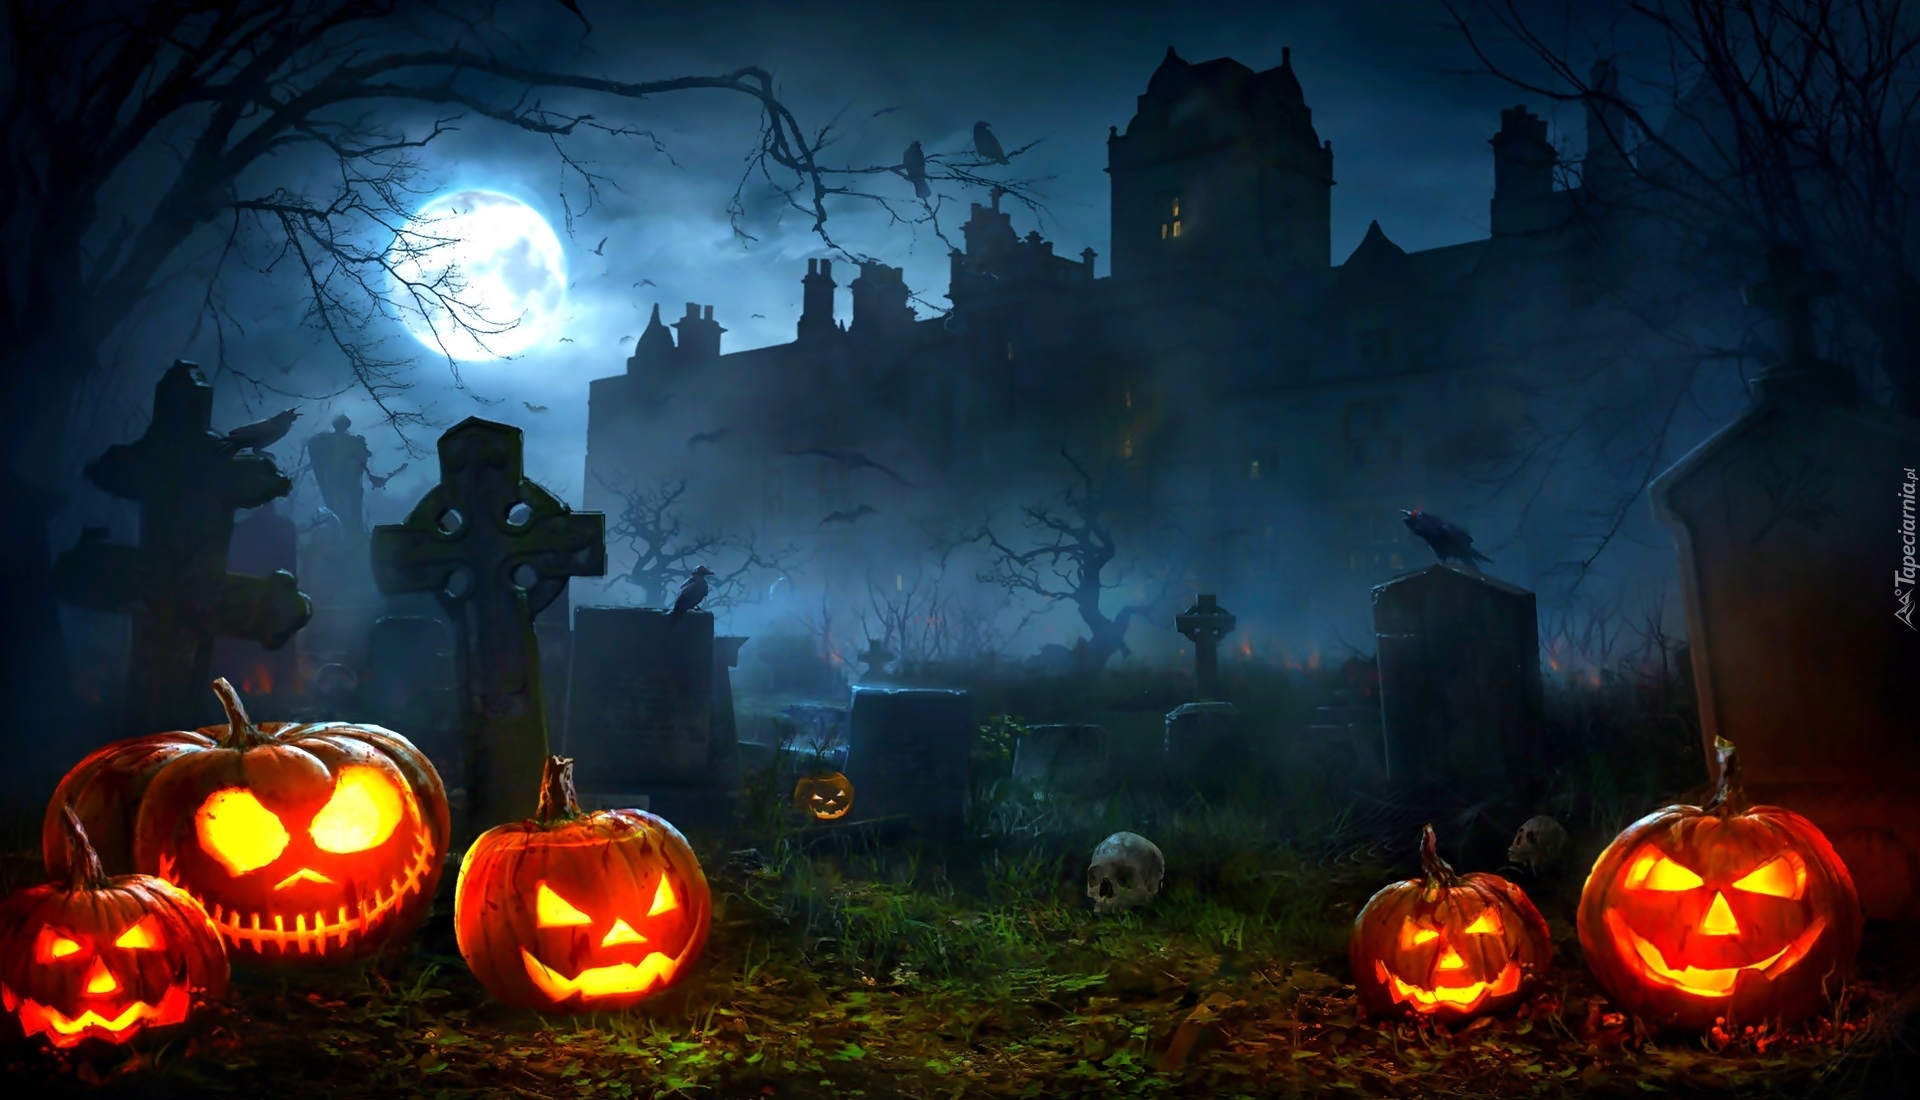 Halloween, Cmentarz, Dynie, Mgła, Zamek, Noc, Księżyc